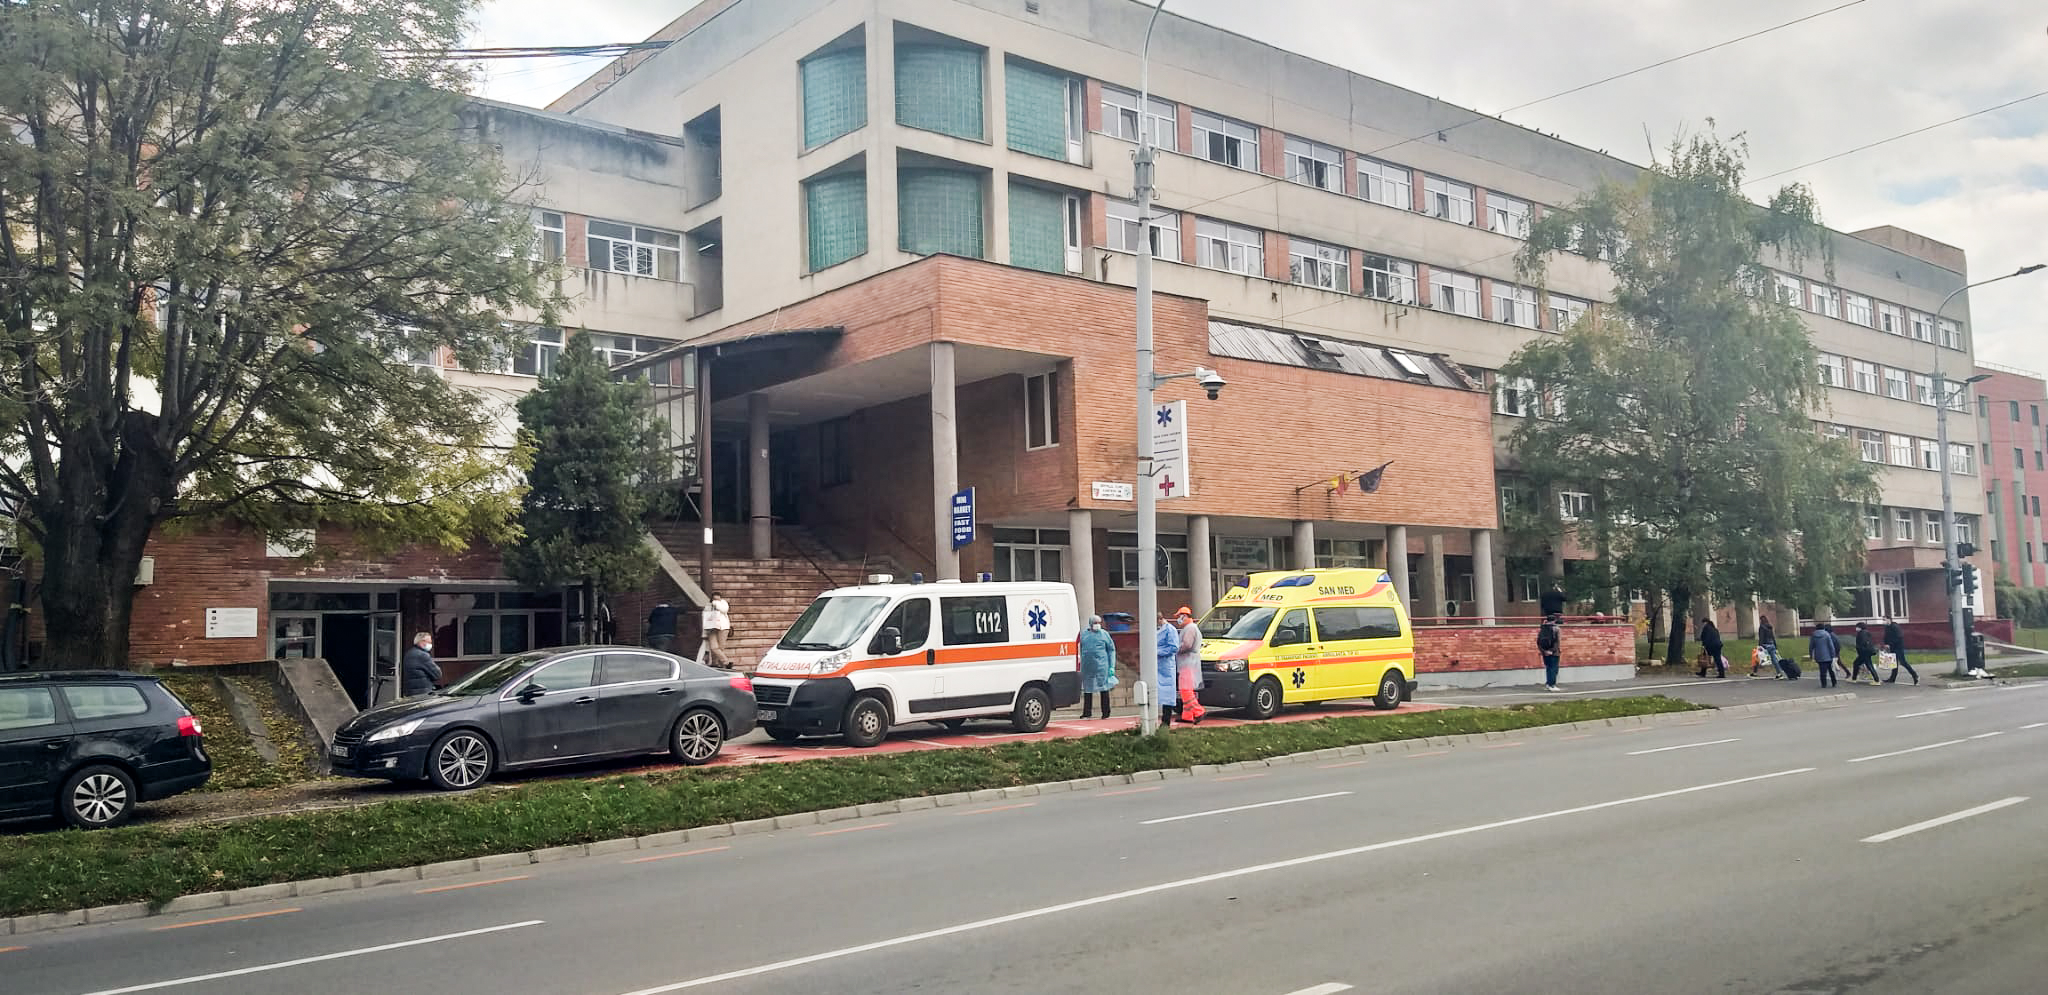 Spitalul Județean a rămas fără curent, din cauza unei defecțiuni care a afectat o mare parte din Sibiu